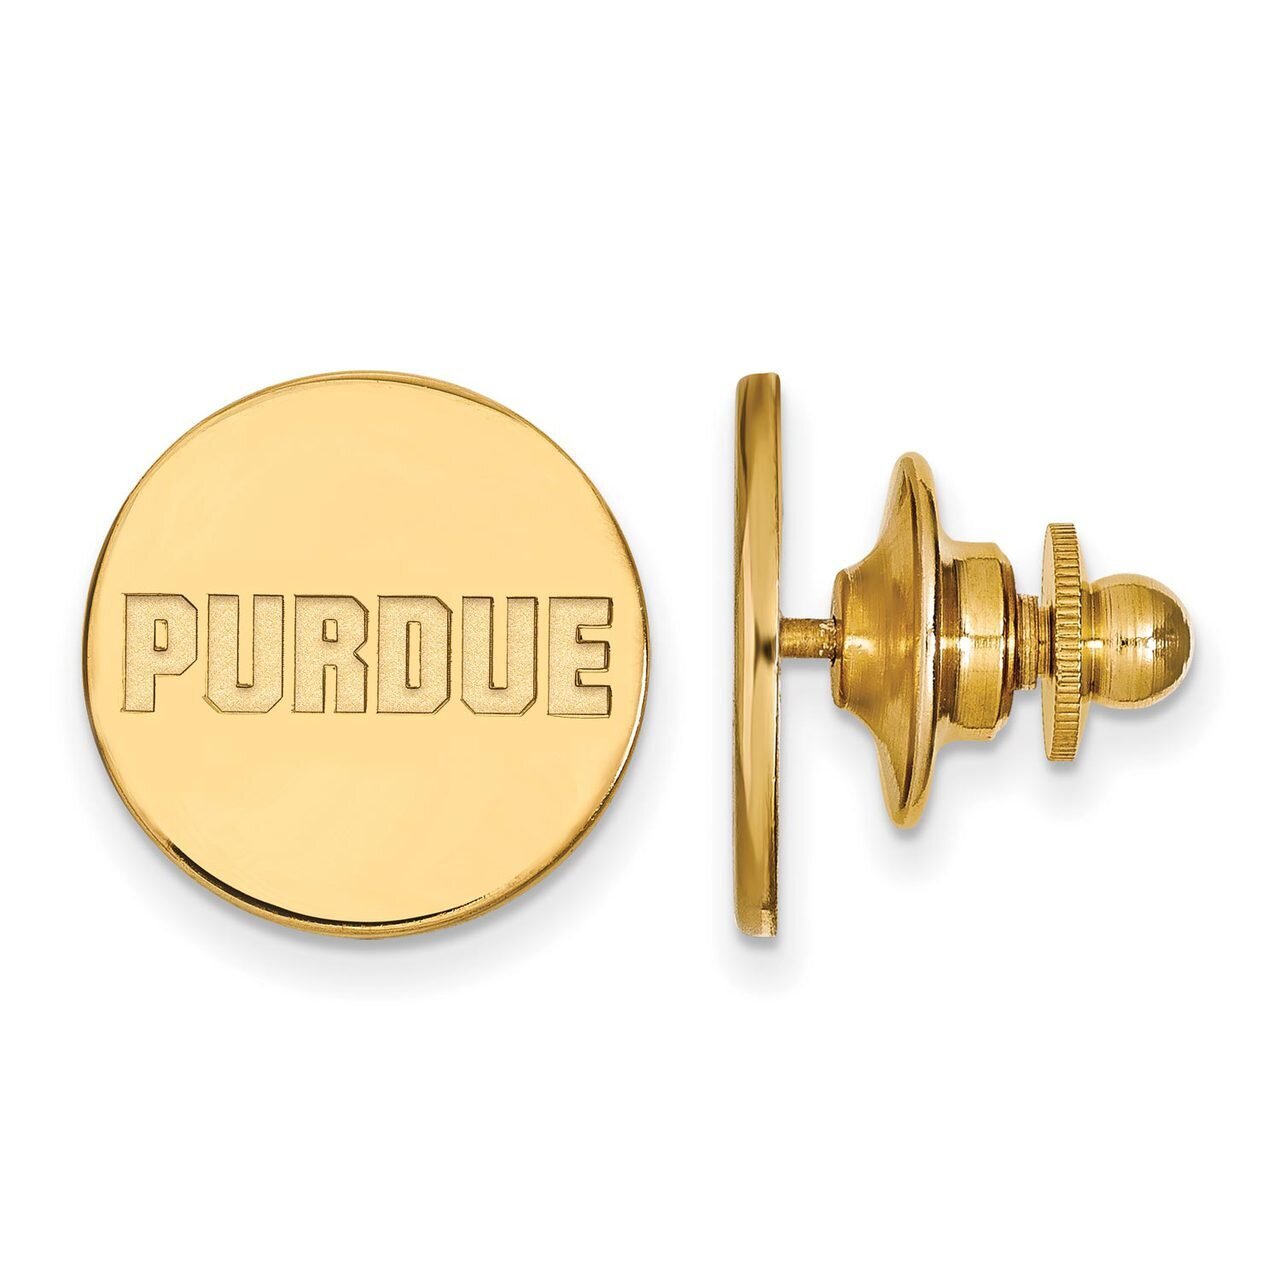 Purdue Lapel Pin 14k Yellow Gold 4Y071PU